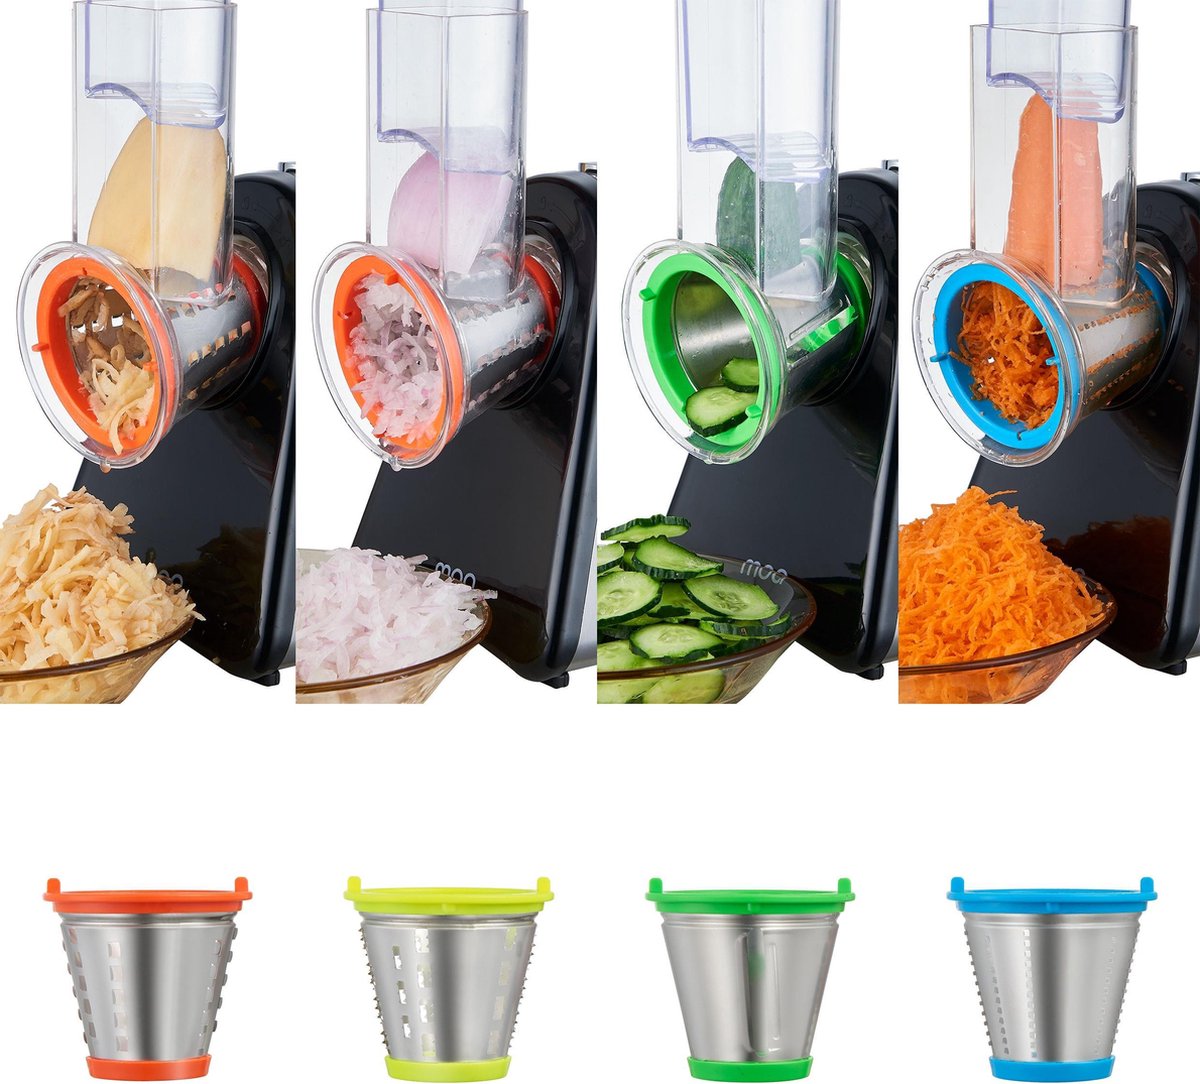 Machine à salade MOA - Coupe-légumes - Robot culinaire - Râpe électrique  SM903